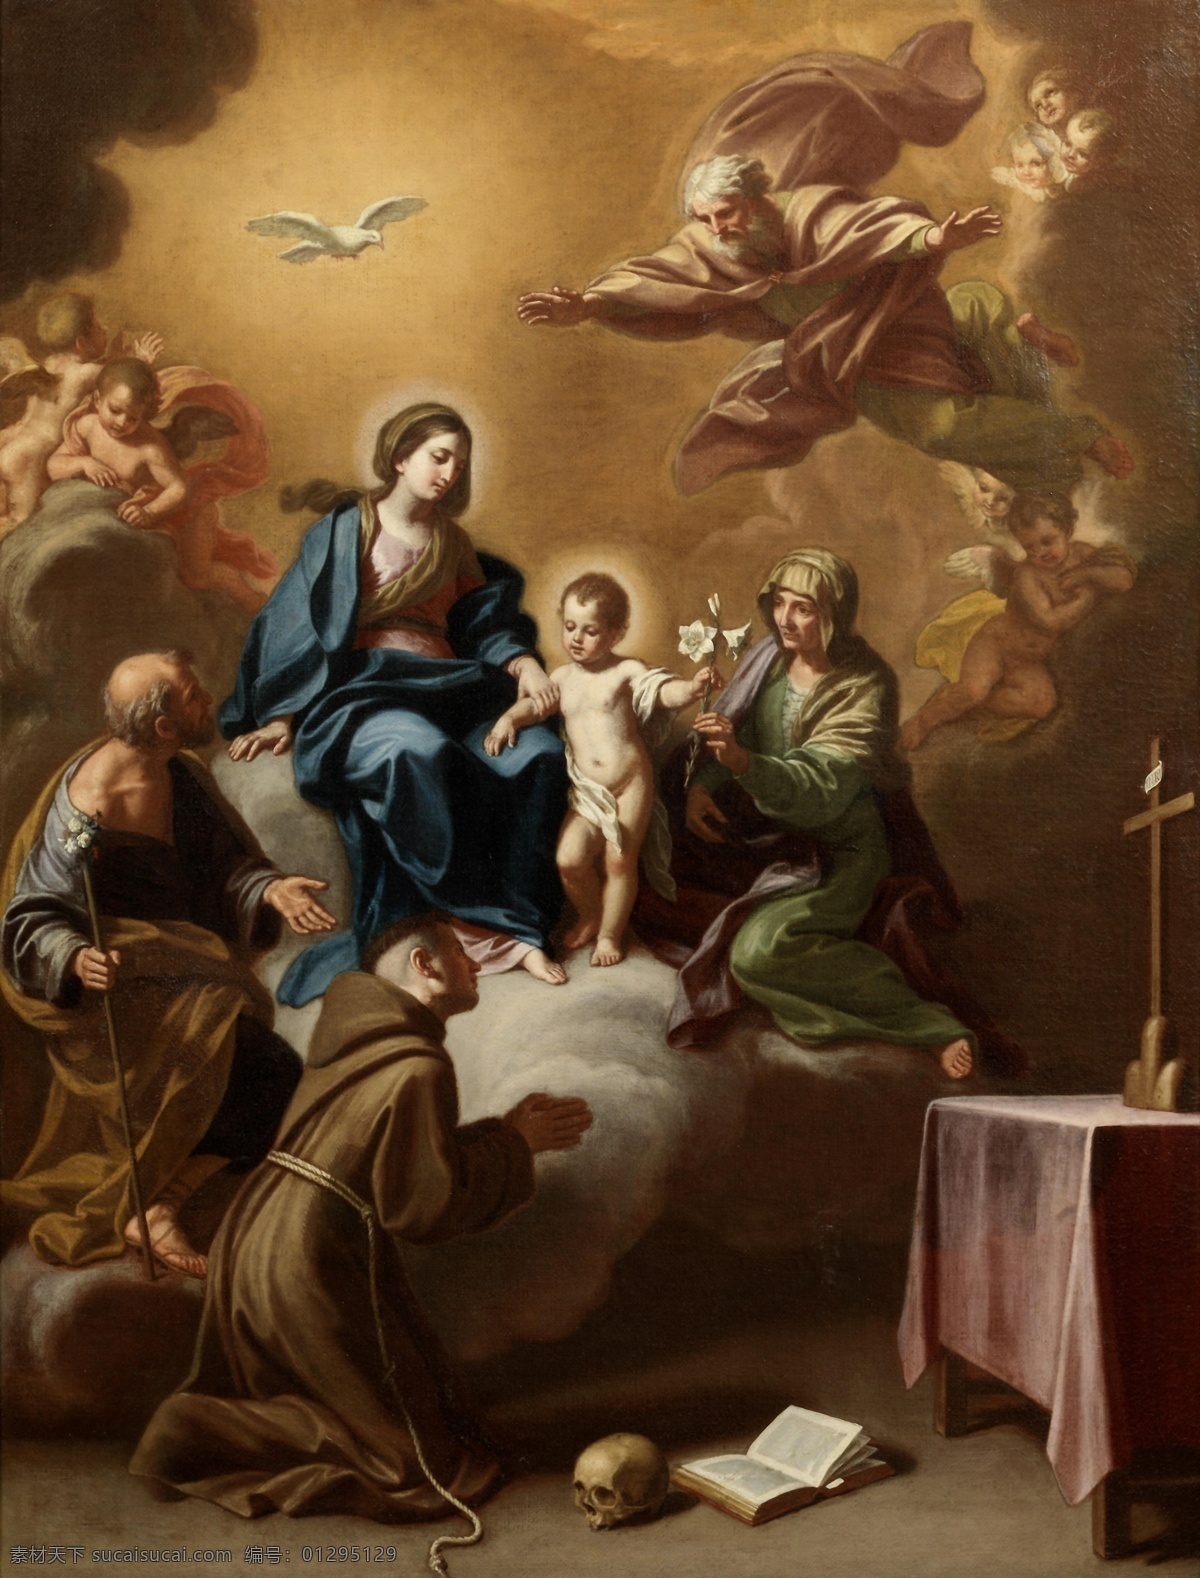 圣母耶稣圣徒 圣母与耶稣 耶稣 玛利亚 方济各 圣徒 人物图库 生活人物